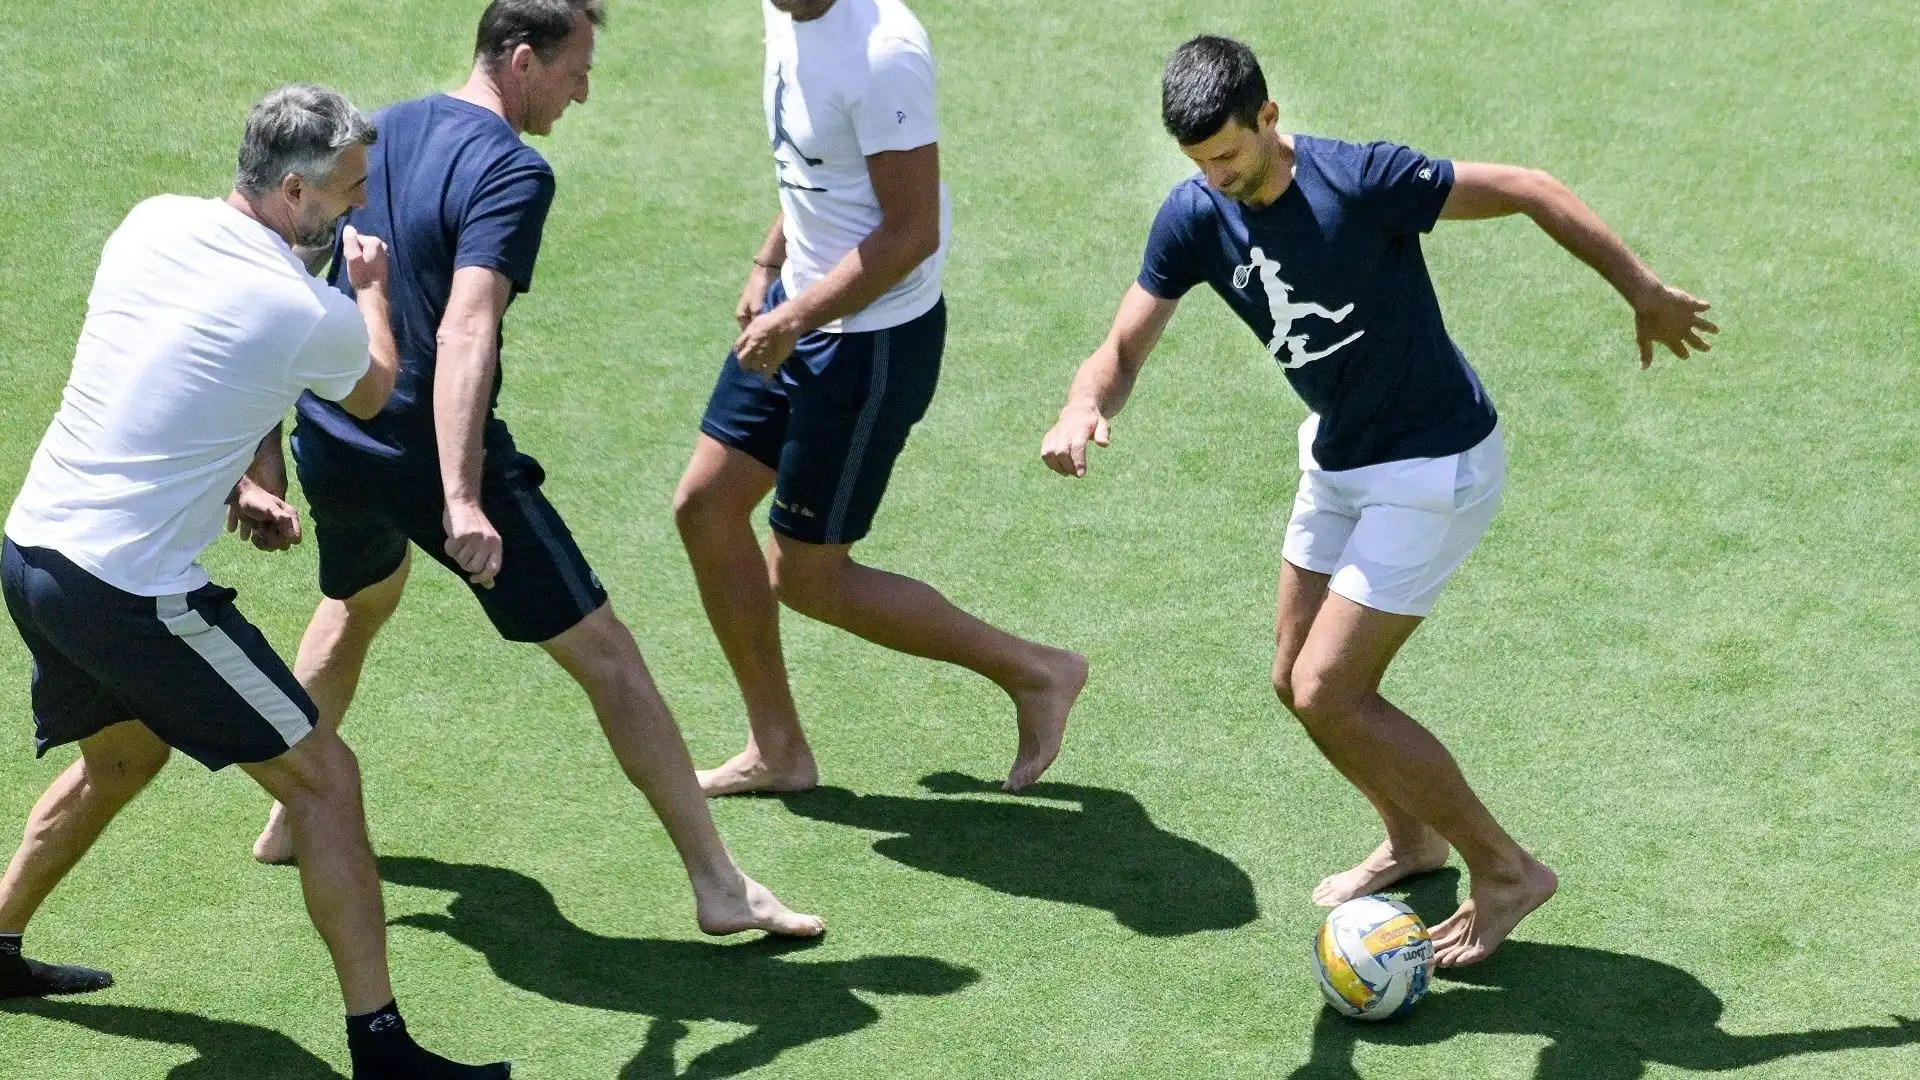 Dopo la partita contro Lestienne Djokovic si è divertito con il suo staff, giocando a calcio a piedi nudi sul sintetico